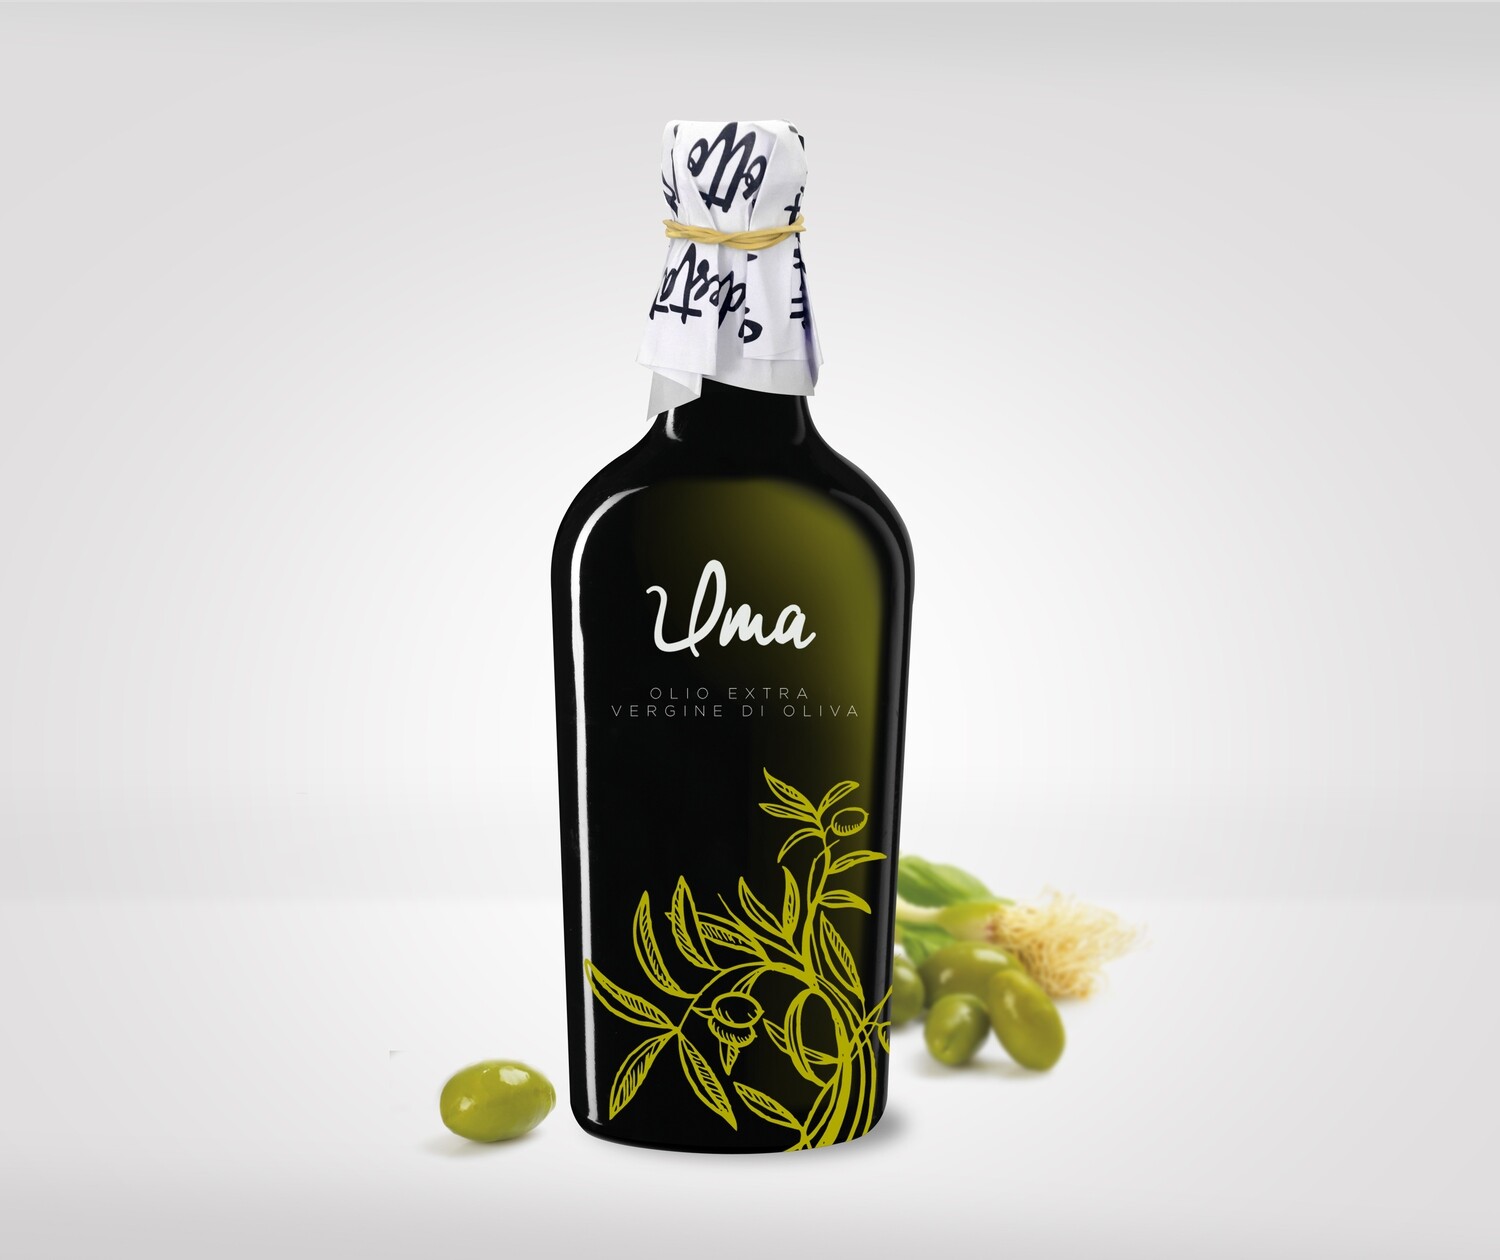 Økologisk extra virgin olive oil, 0,5 cl.